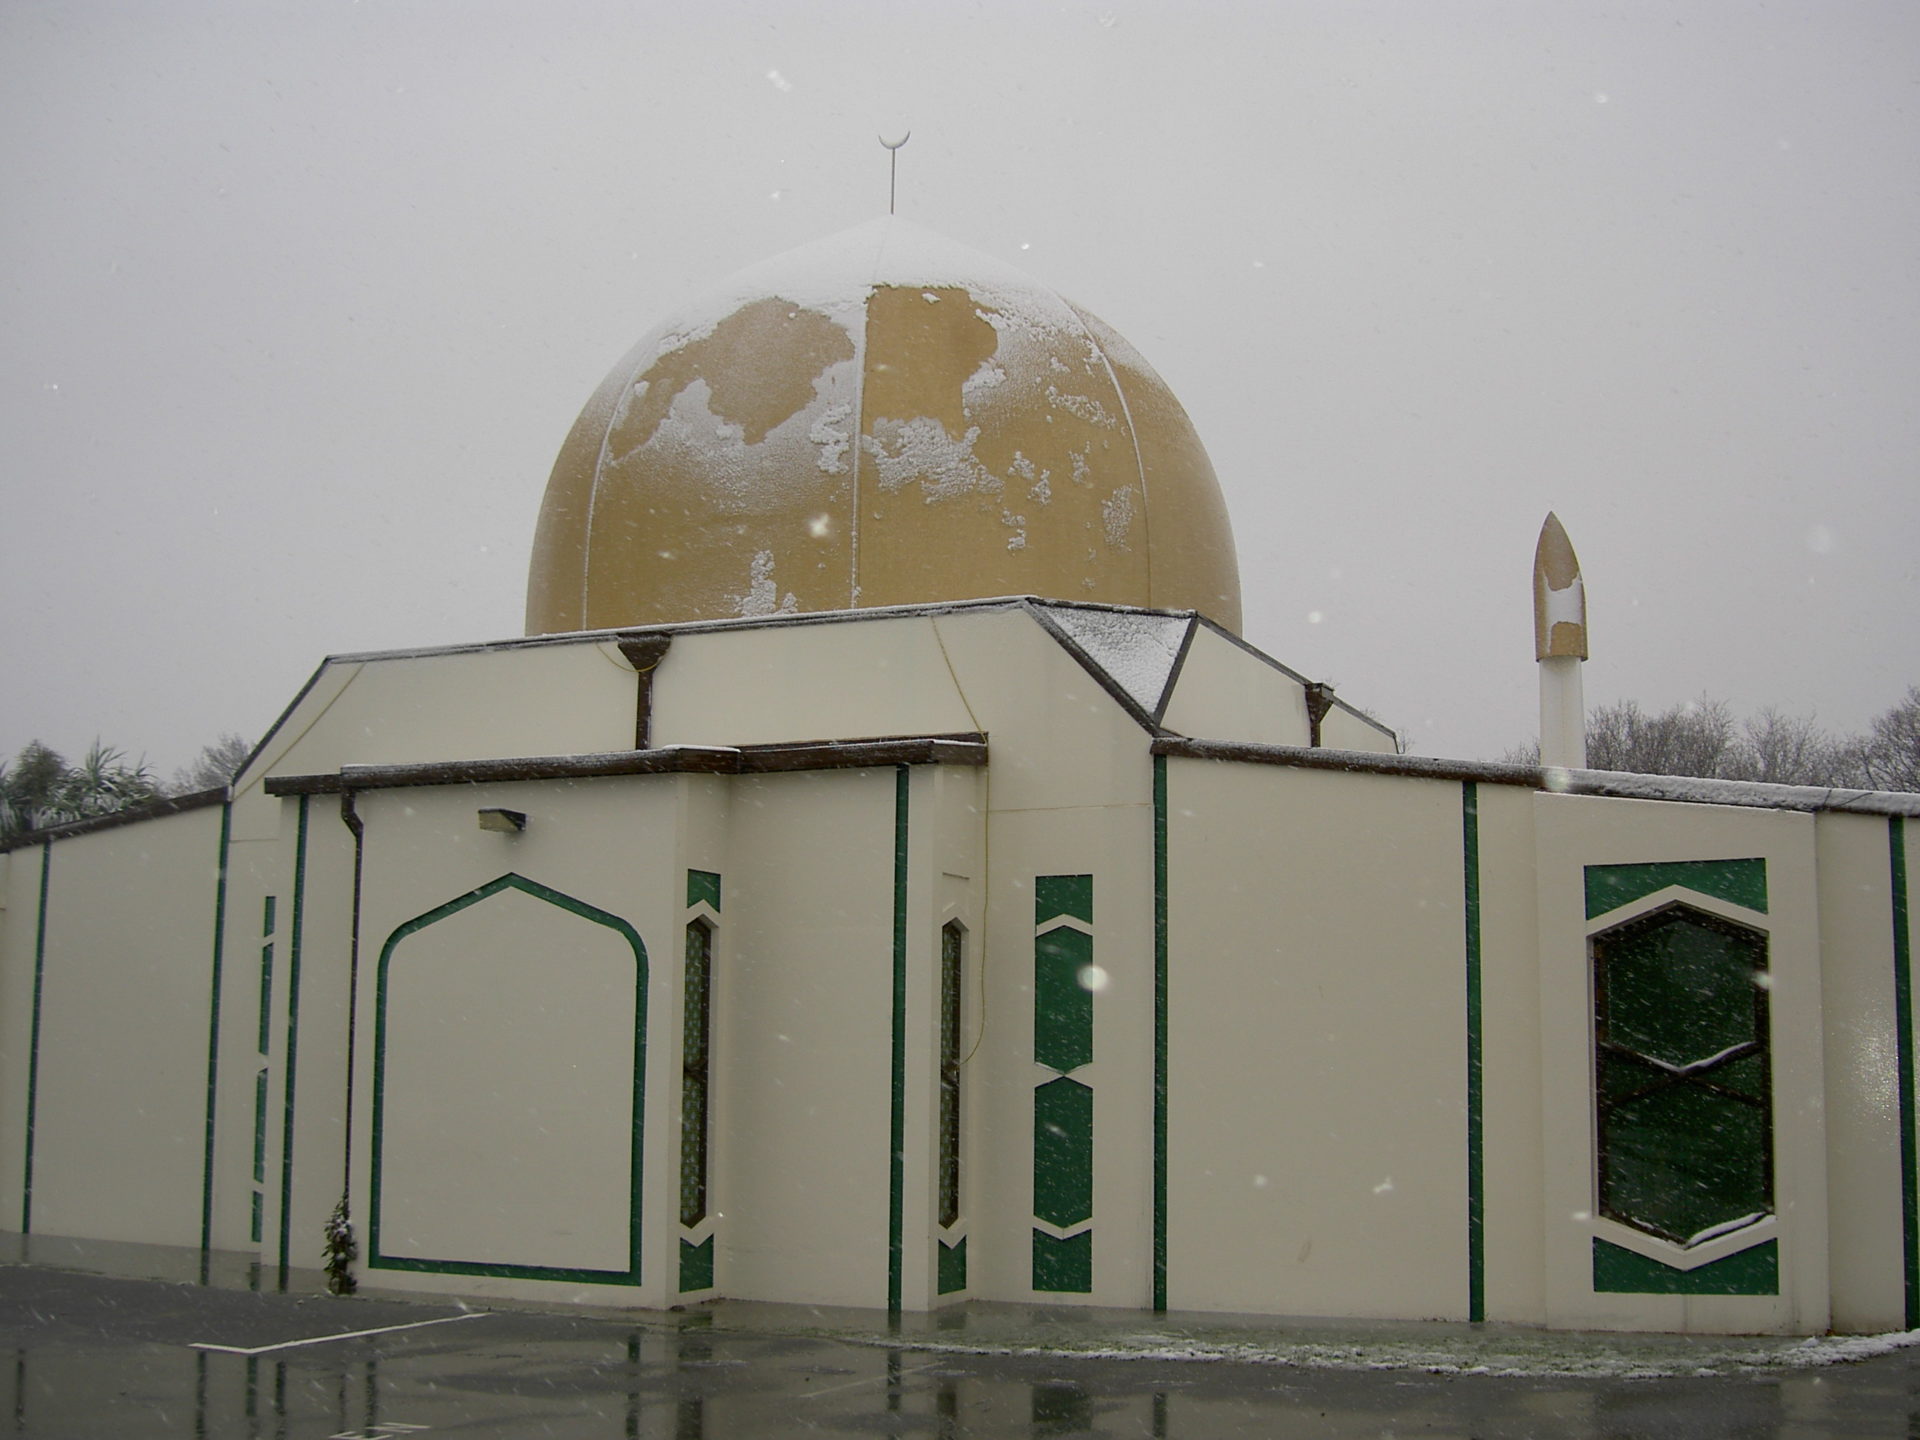 La mosquée 'Canterbury' à Christchurch est une des leiux de culte attaqués | wikimedia commons CC0  Abdullah@xtra.co.nz 